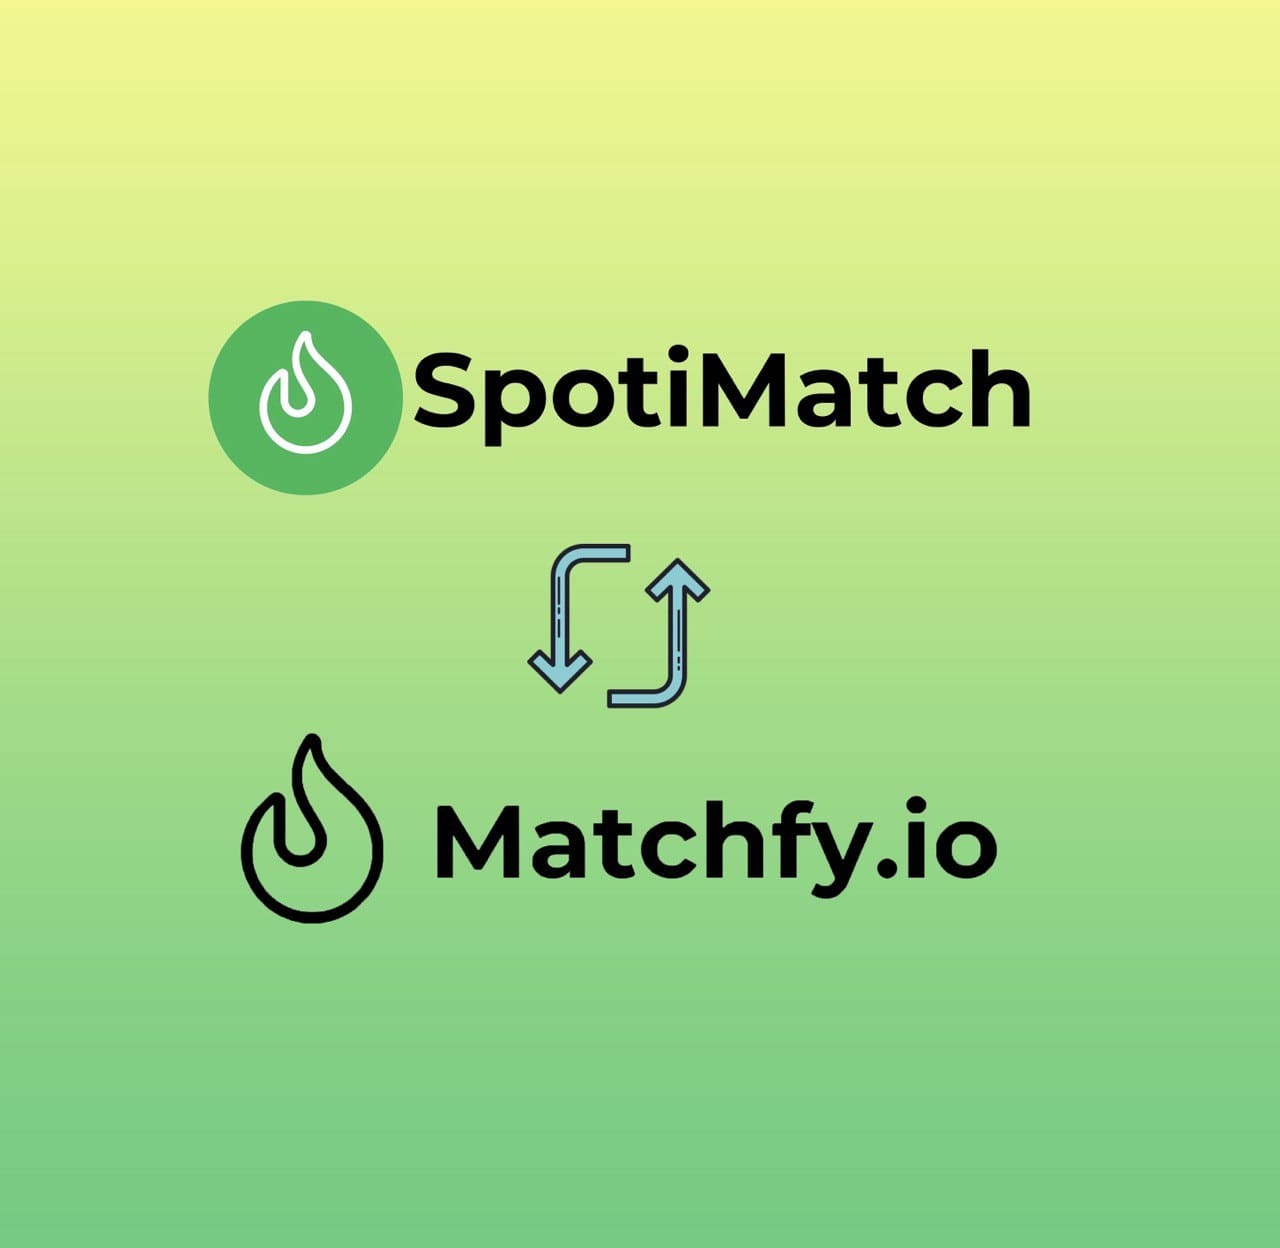 Spotimatch.com diventa Matchfy.io per allinearsi con Spotify.